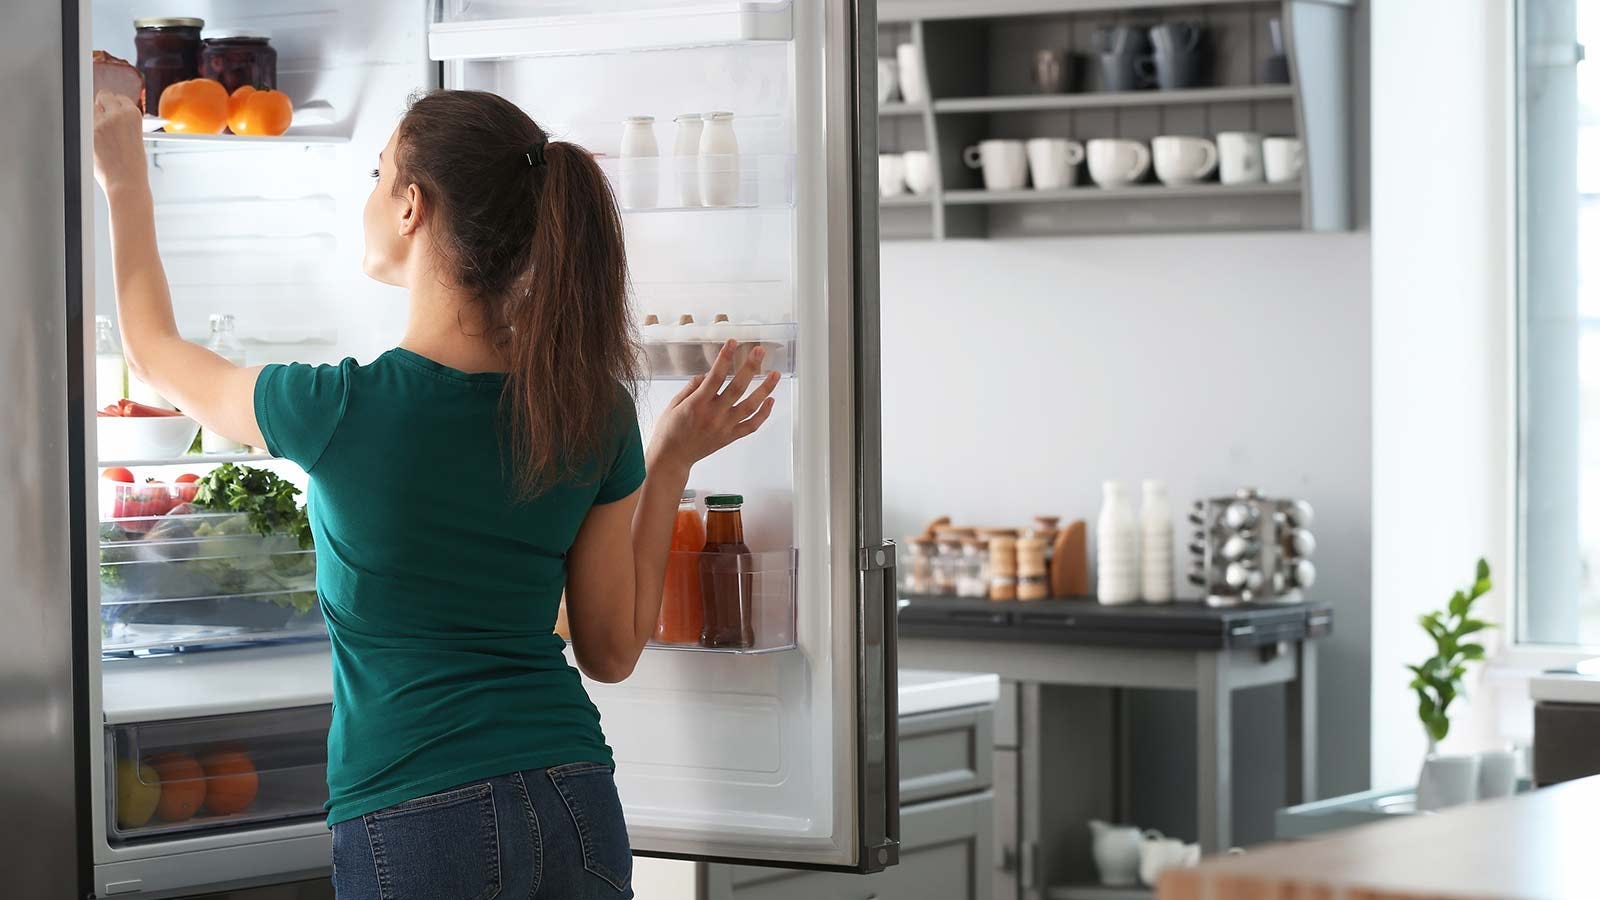 Ce hack d’organisation de réfrigérateur vous aidera à manger vos légumes